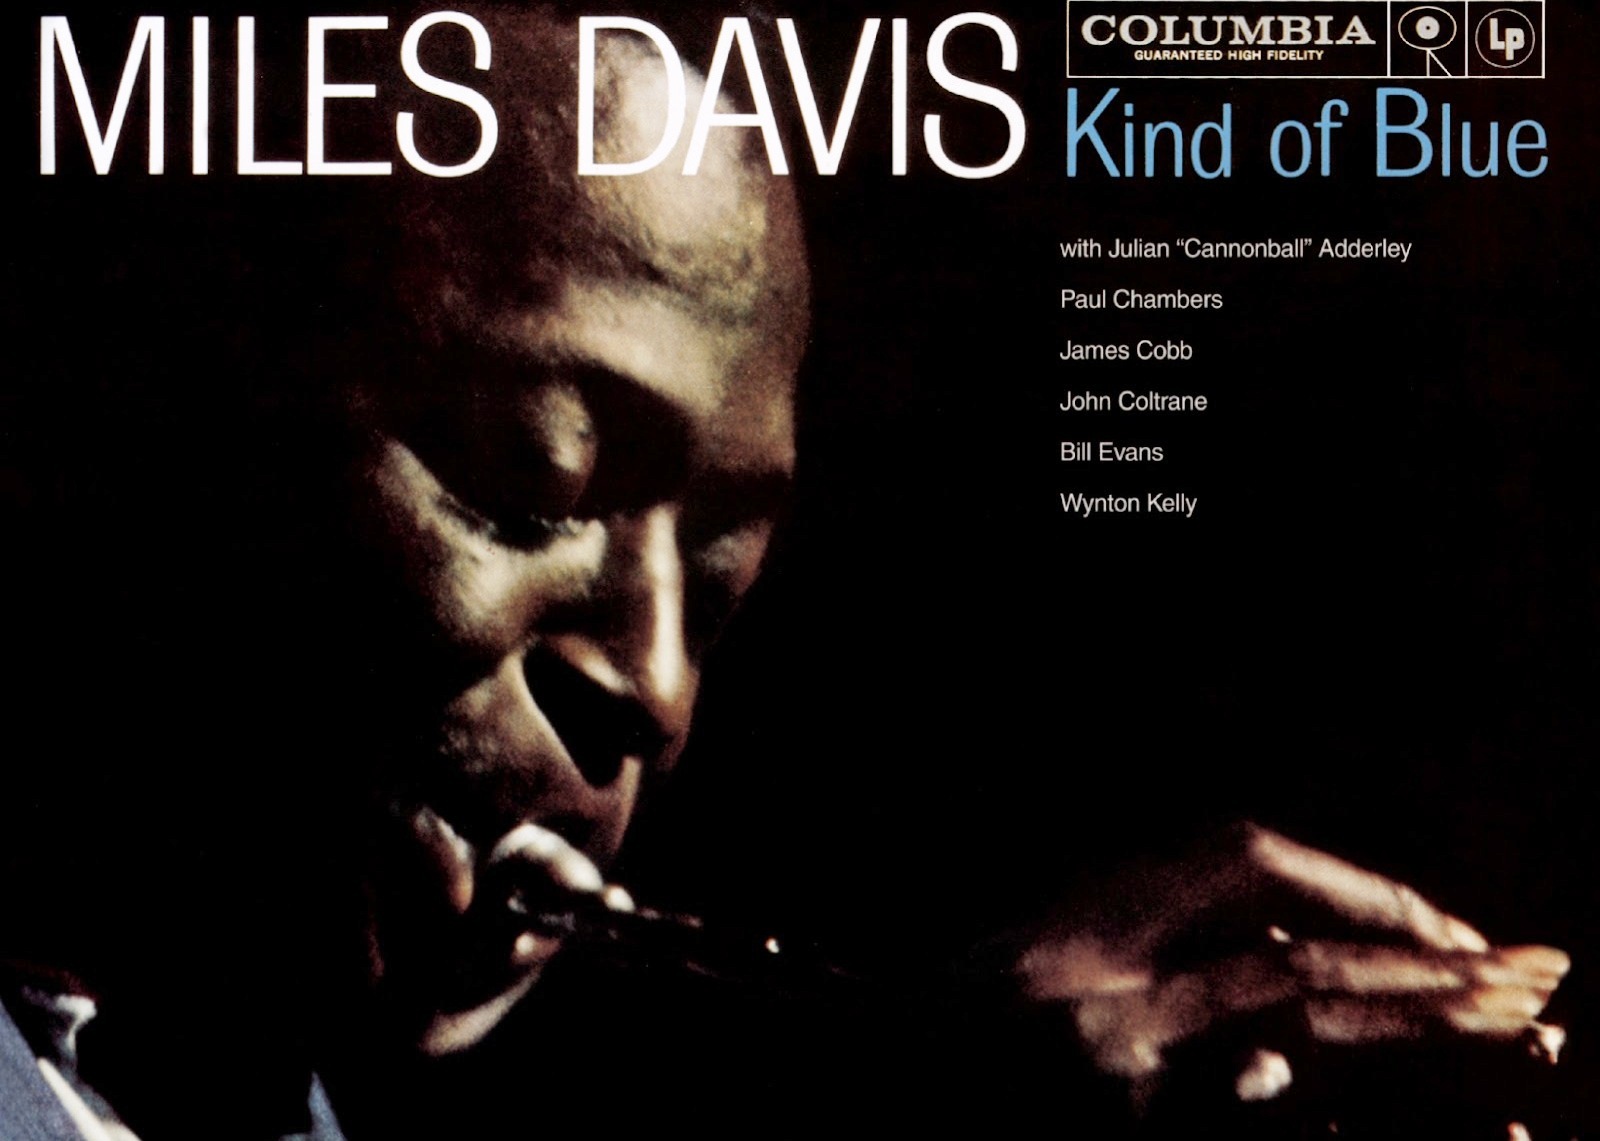 Blue miles. Kind of Blue Майлз Дэвис. Miles Davis - kind of Blue. Miles Davis - kind of Blue (1959). Miles Davis - kind of Blue (Full album) 1959.